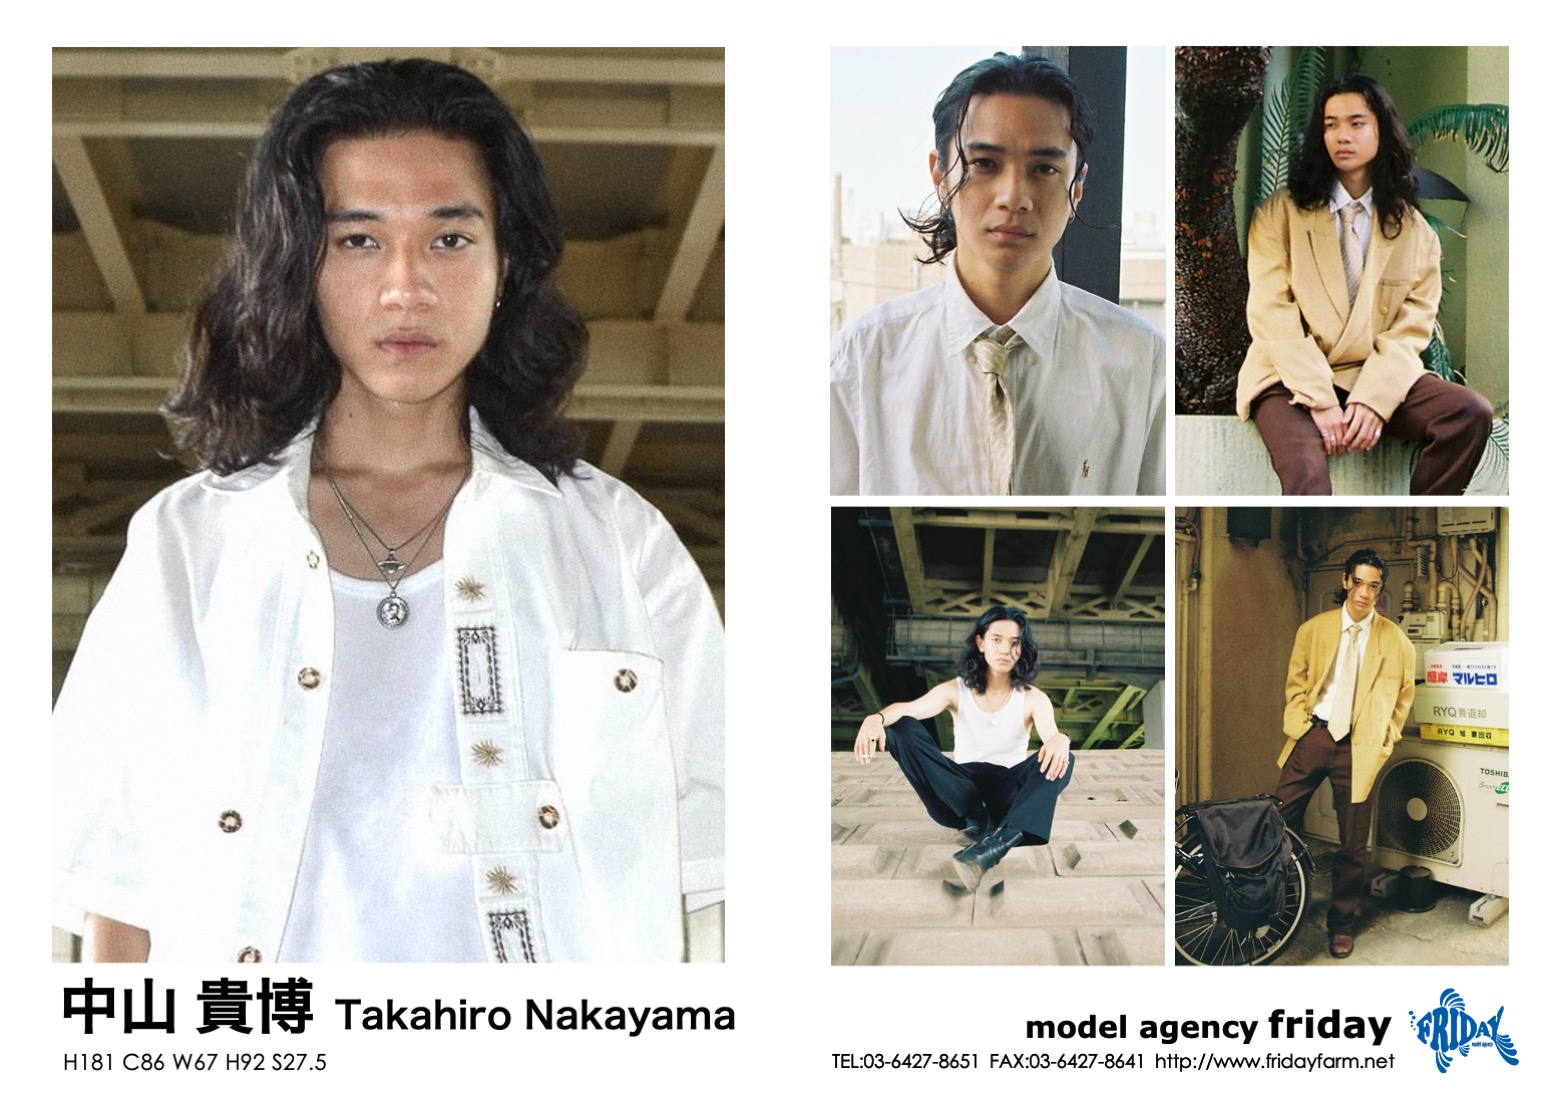 中山 貴博 - Takahiro Nakayama | model agency friday